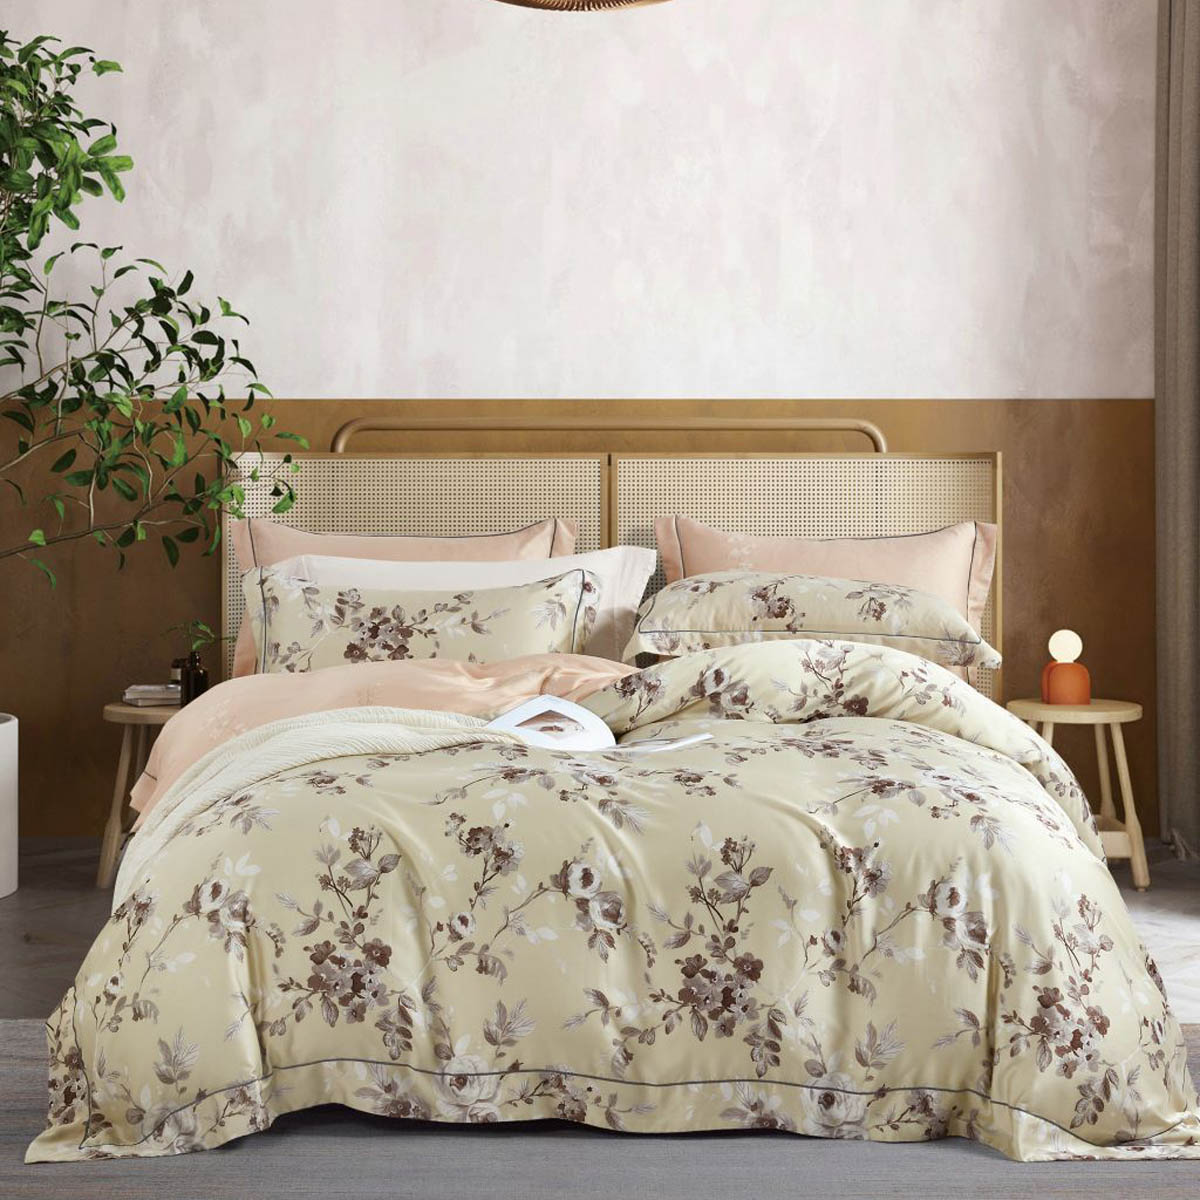 Комплект постельного белья евро Asabella, цветы на жемчужно-бежевом Anabella Asabella 1809-6 - фото 1